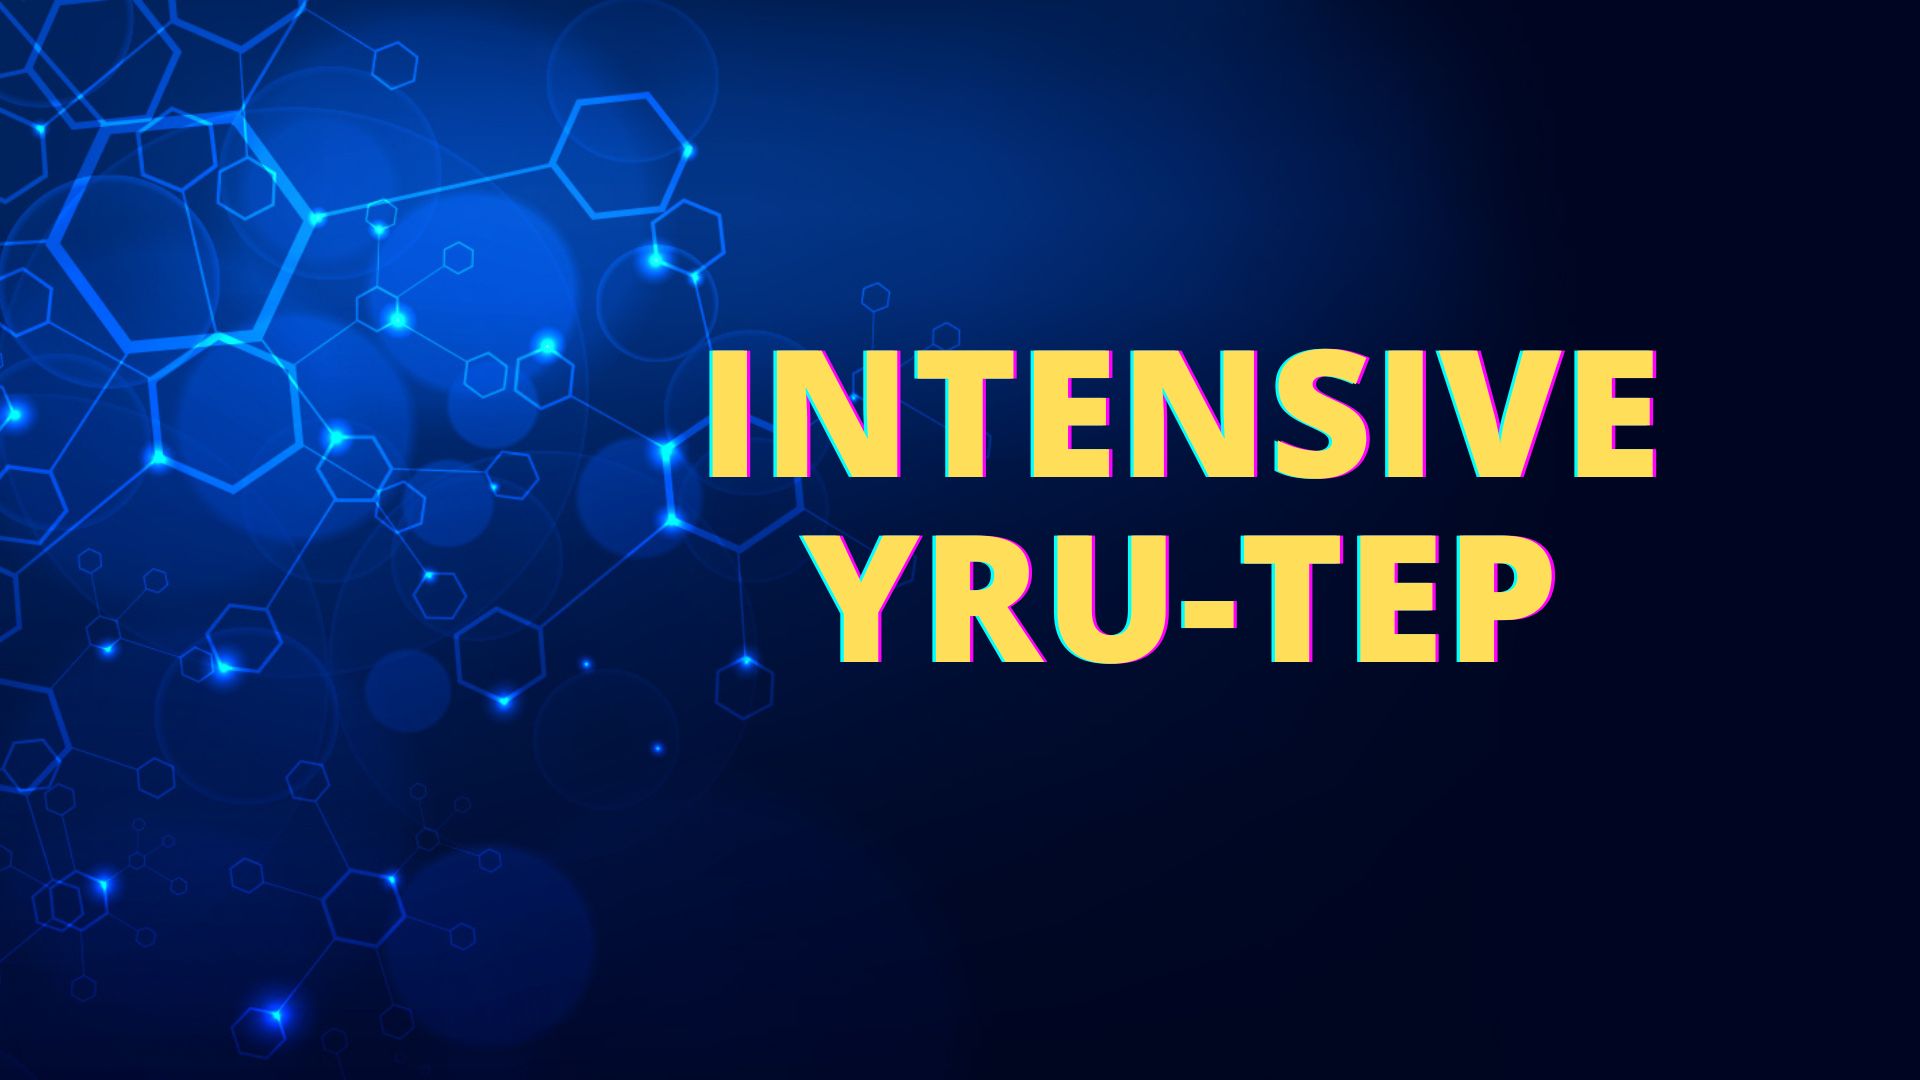 INTENSIVE YRU-TEP